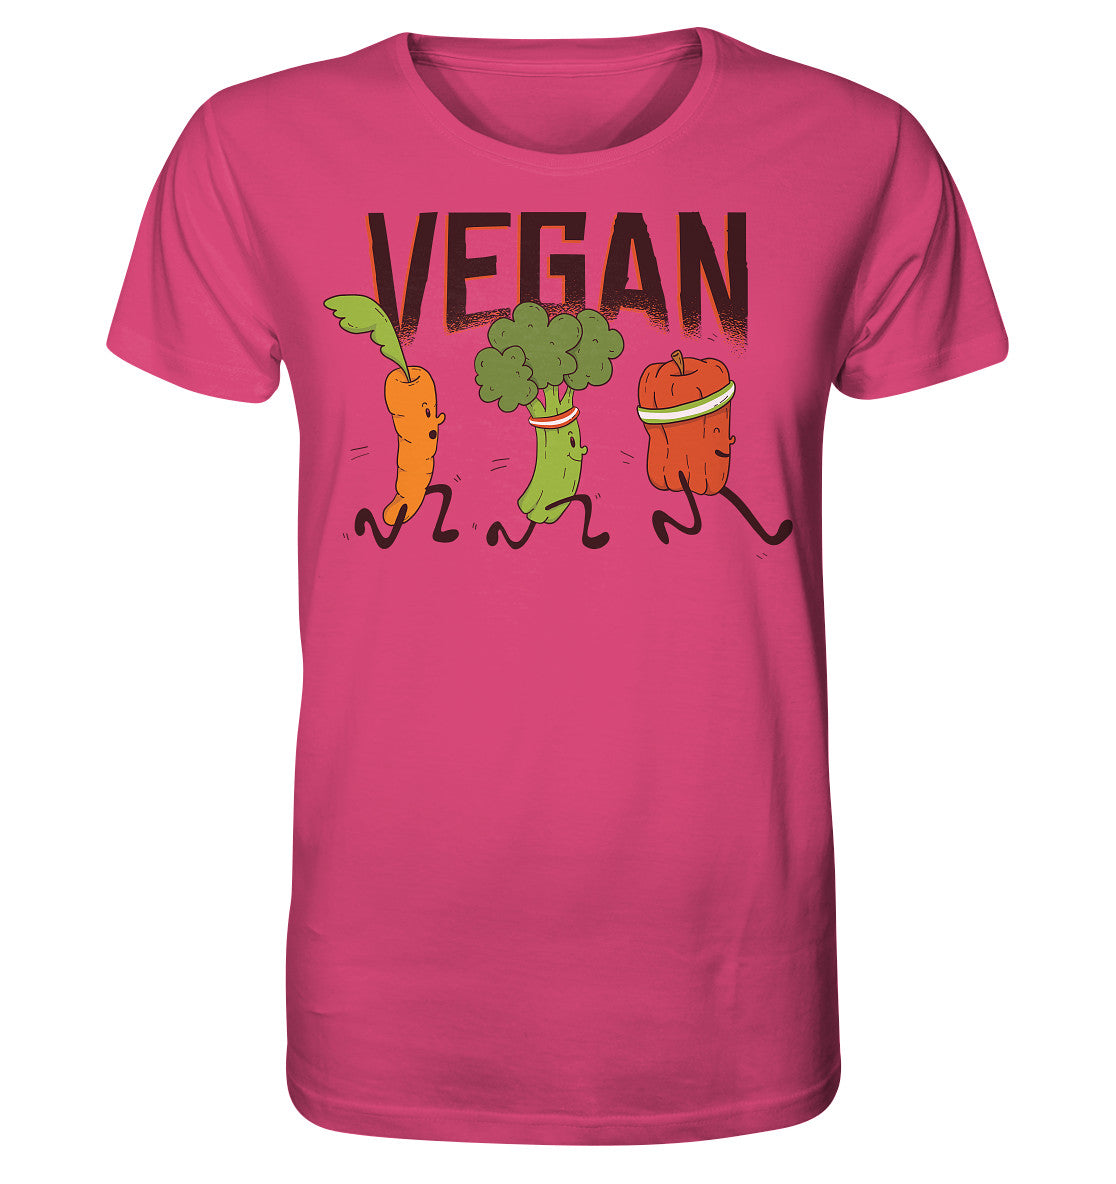 Vegan runners - Herren Bio Shirt